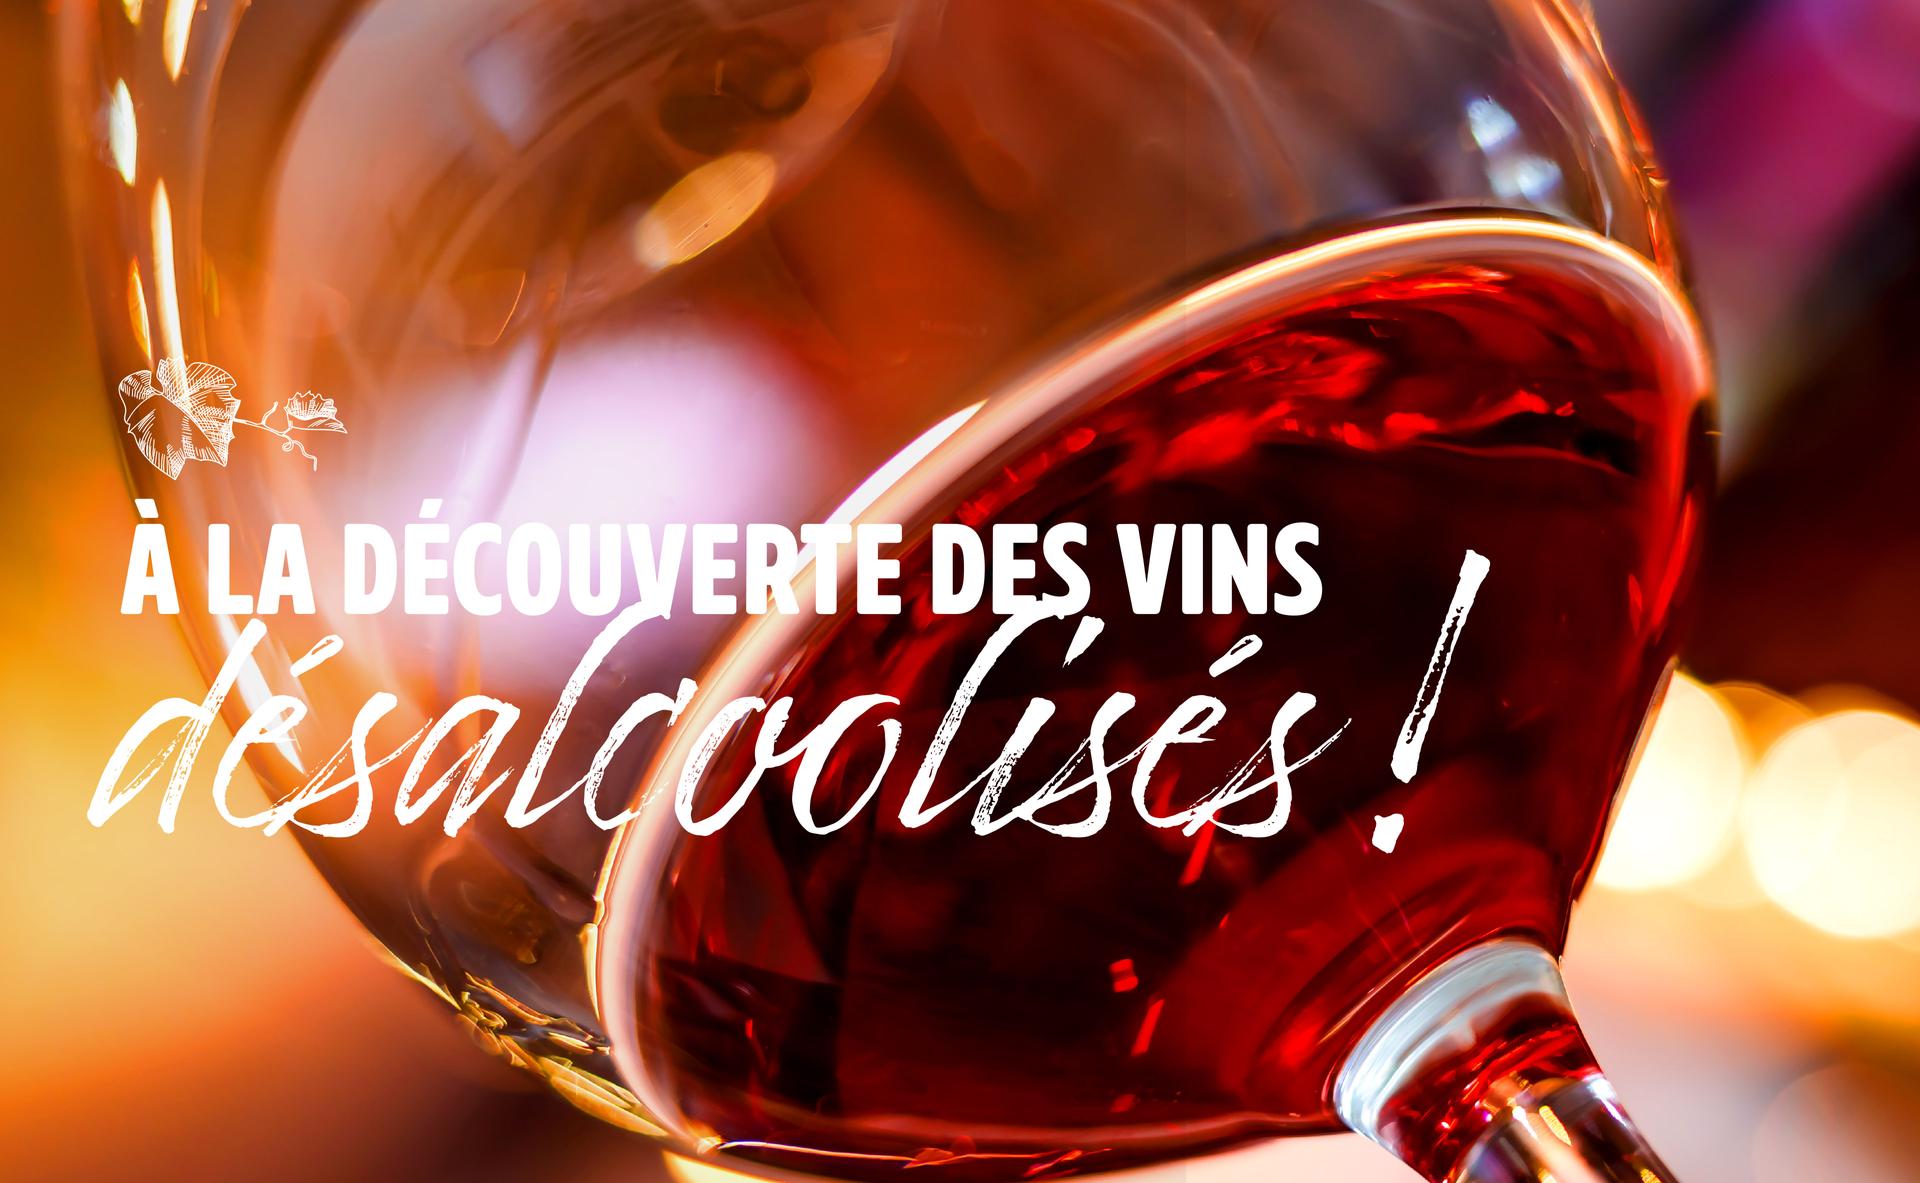 A la découverte des vins dés-alcoolisés !